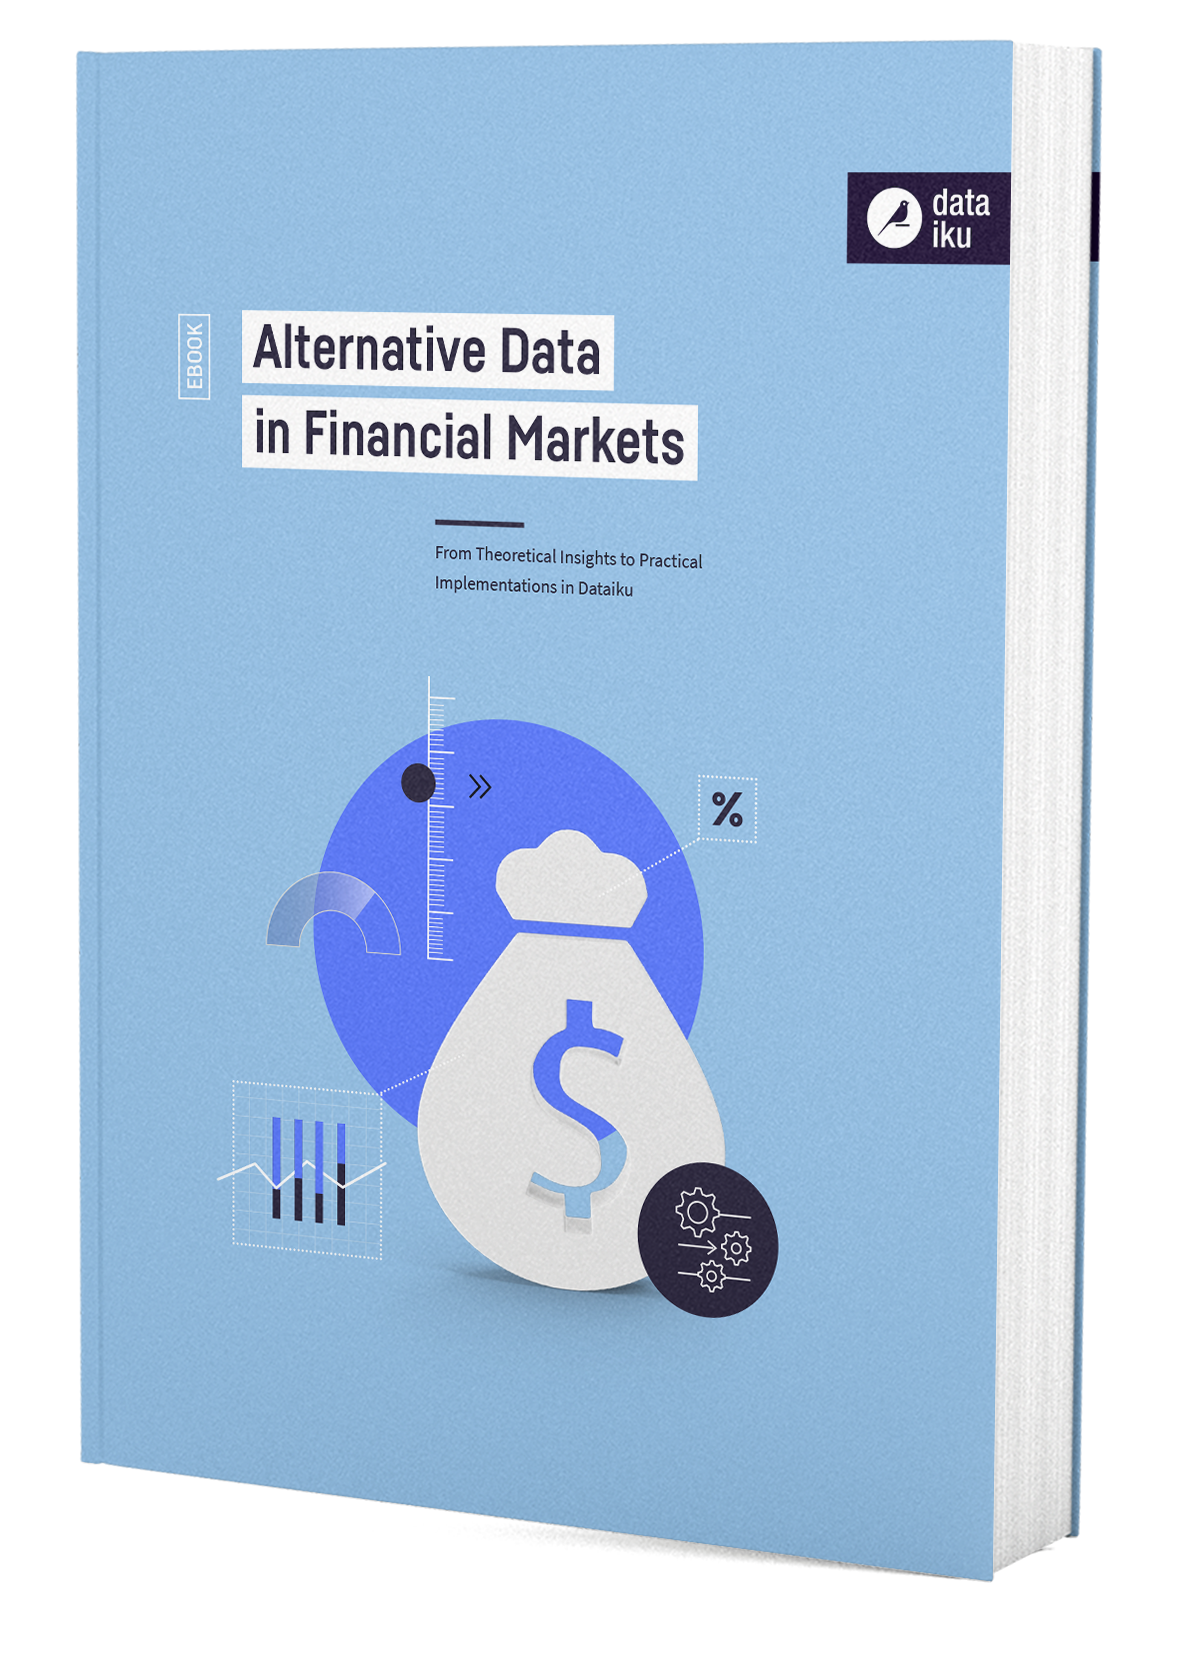 DTKU_Alternative-Data-In-Financial-Market_Ebook_WEB